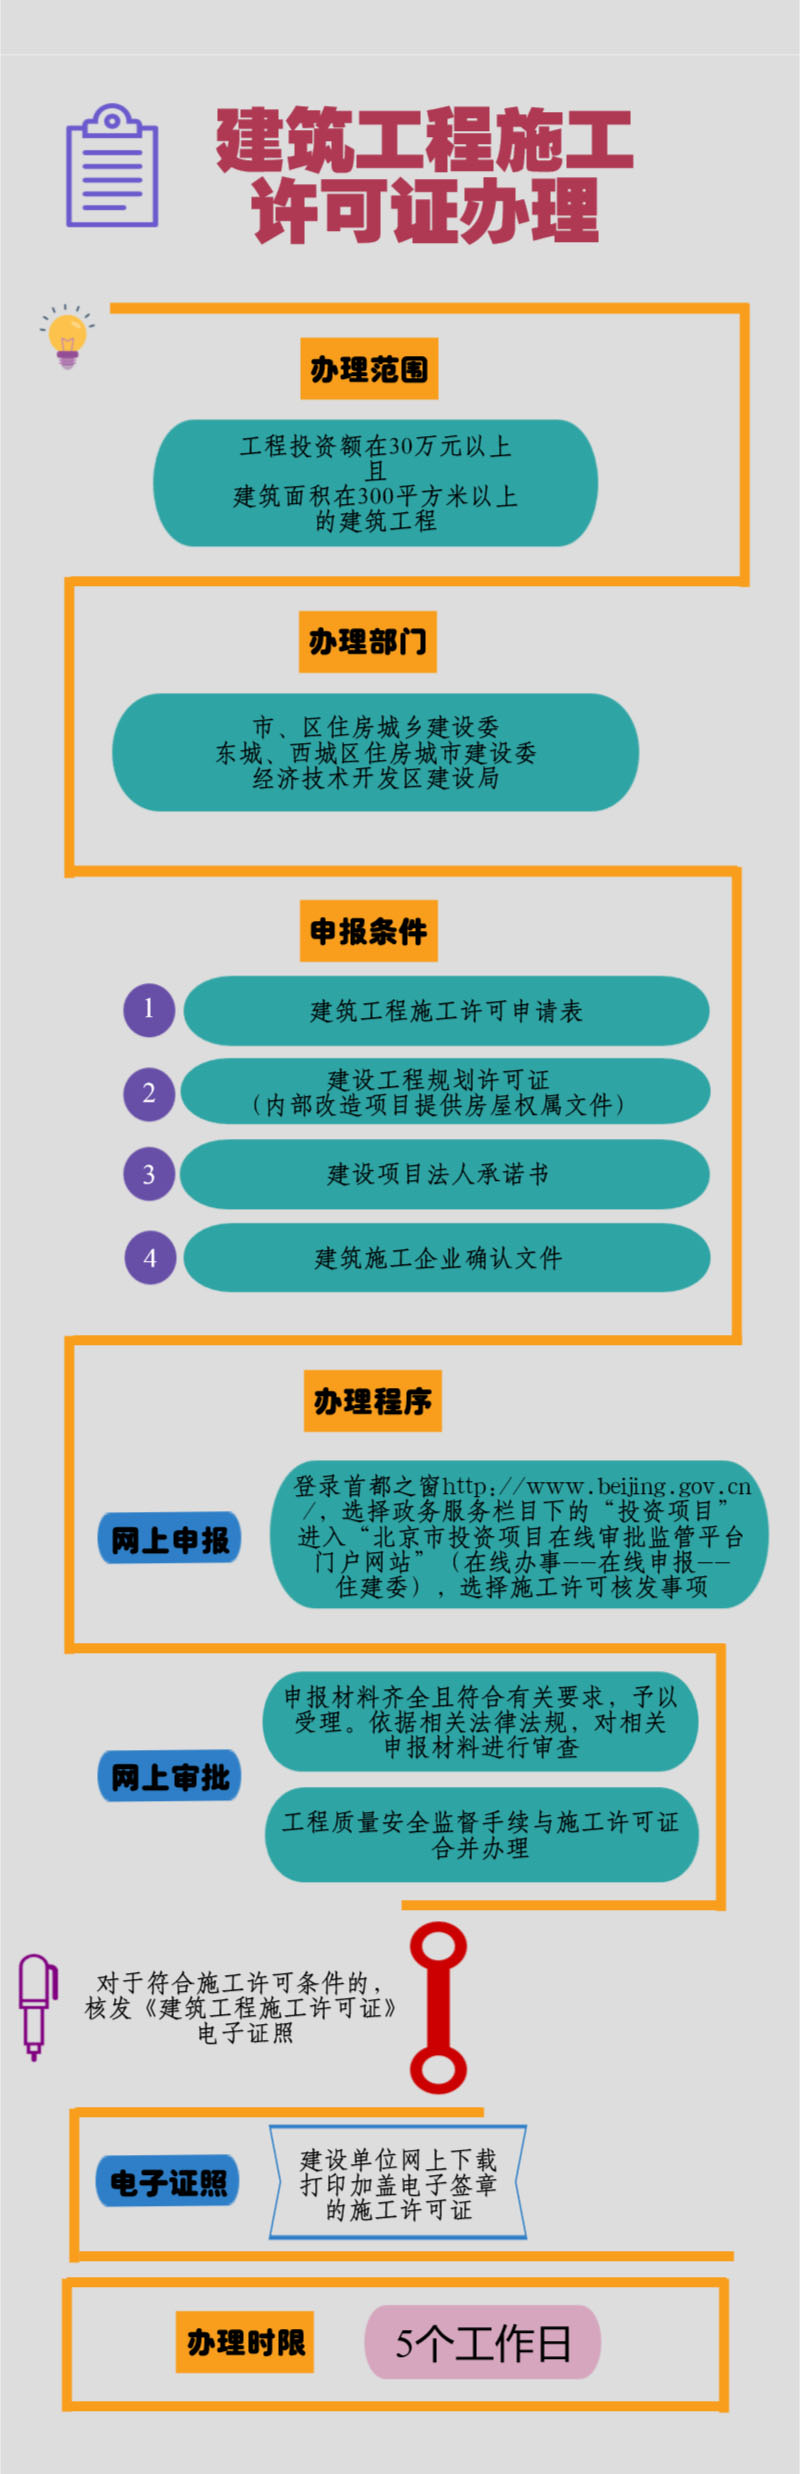 北京市建筑工程施工许可证办理流程图(图1)